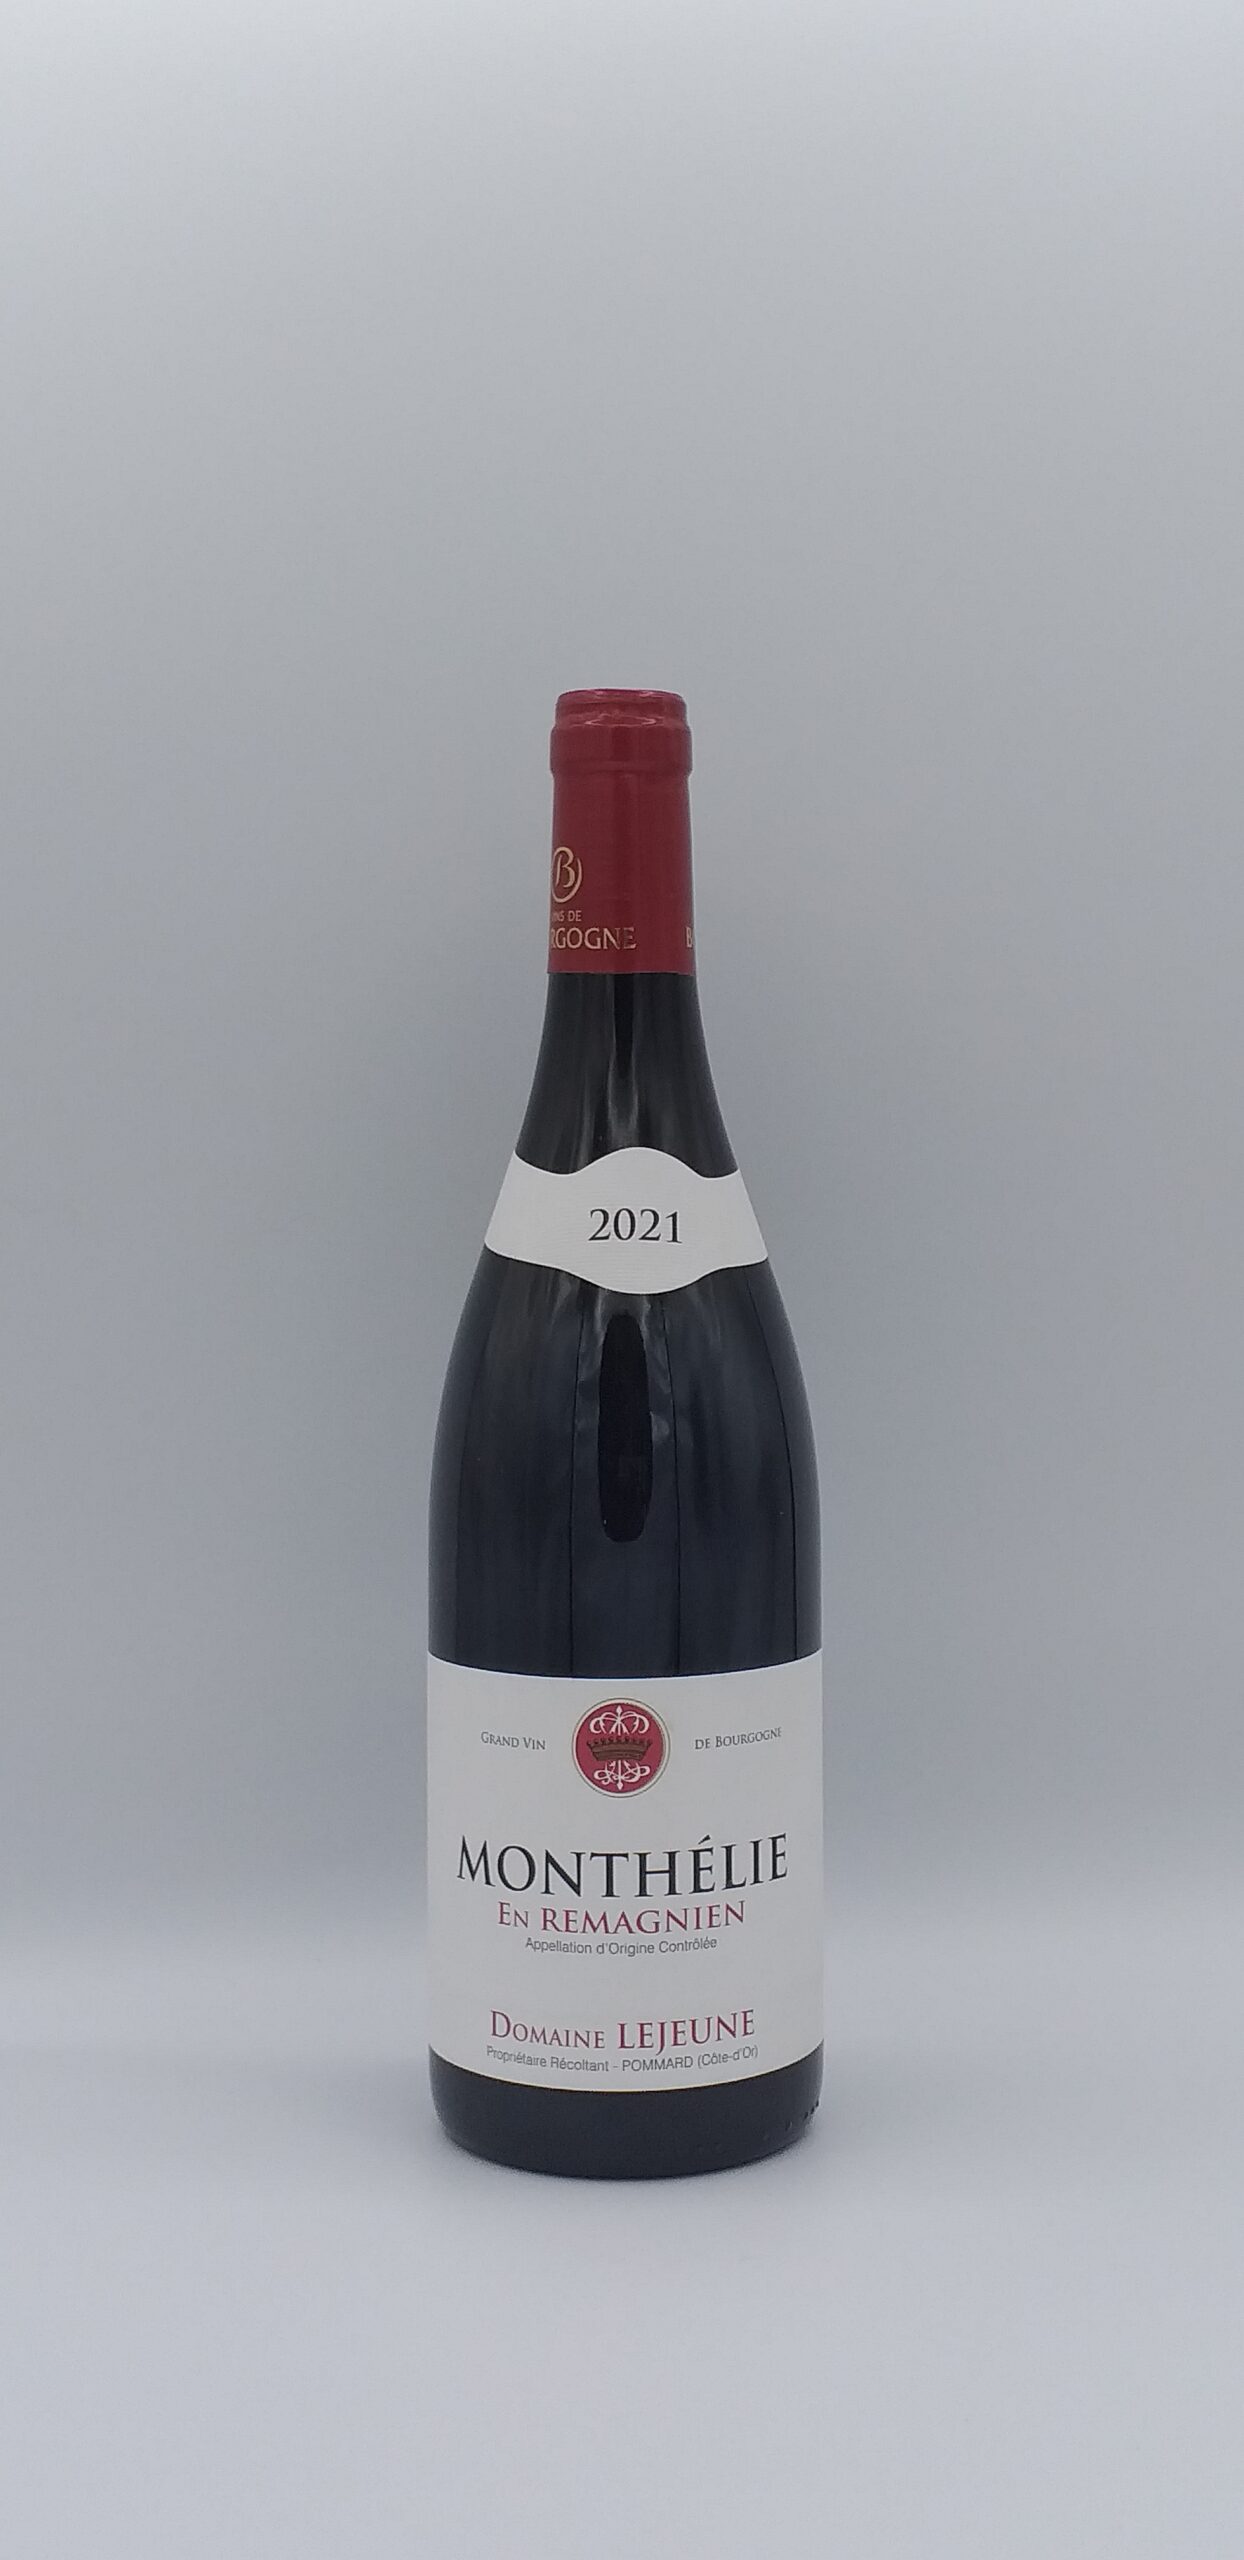 Bourgogne Monthélie “En Remagnien” 2021 Domaine Lejeune